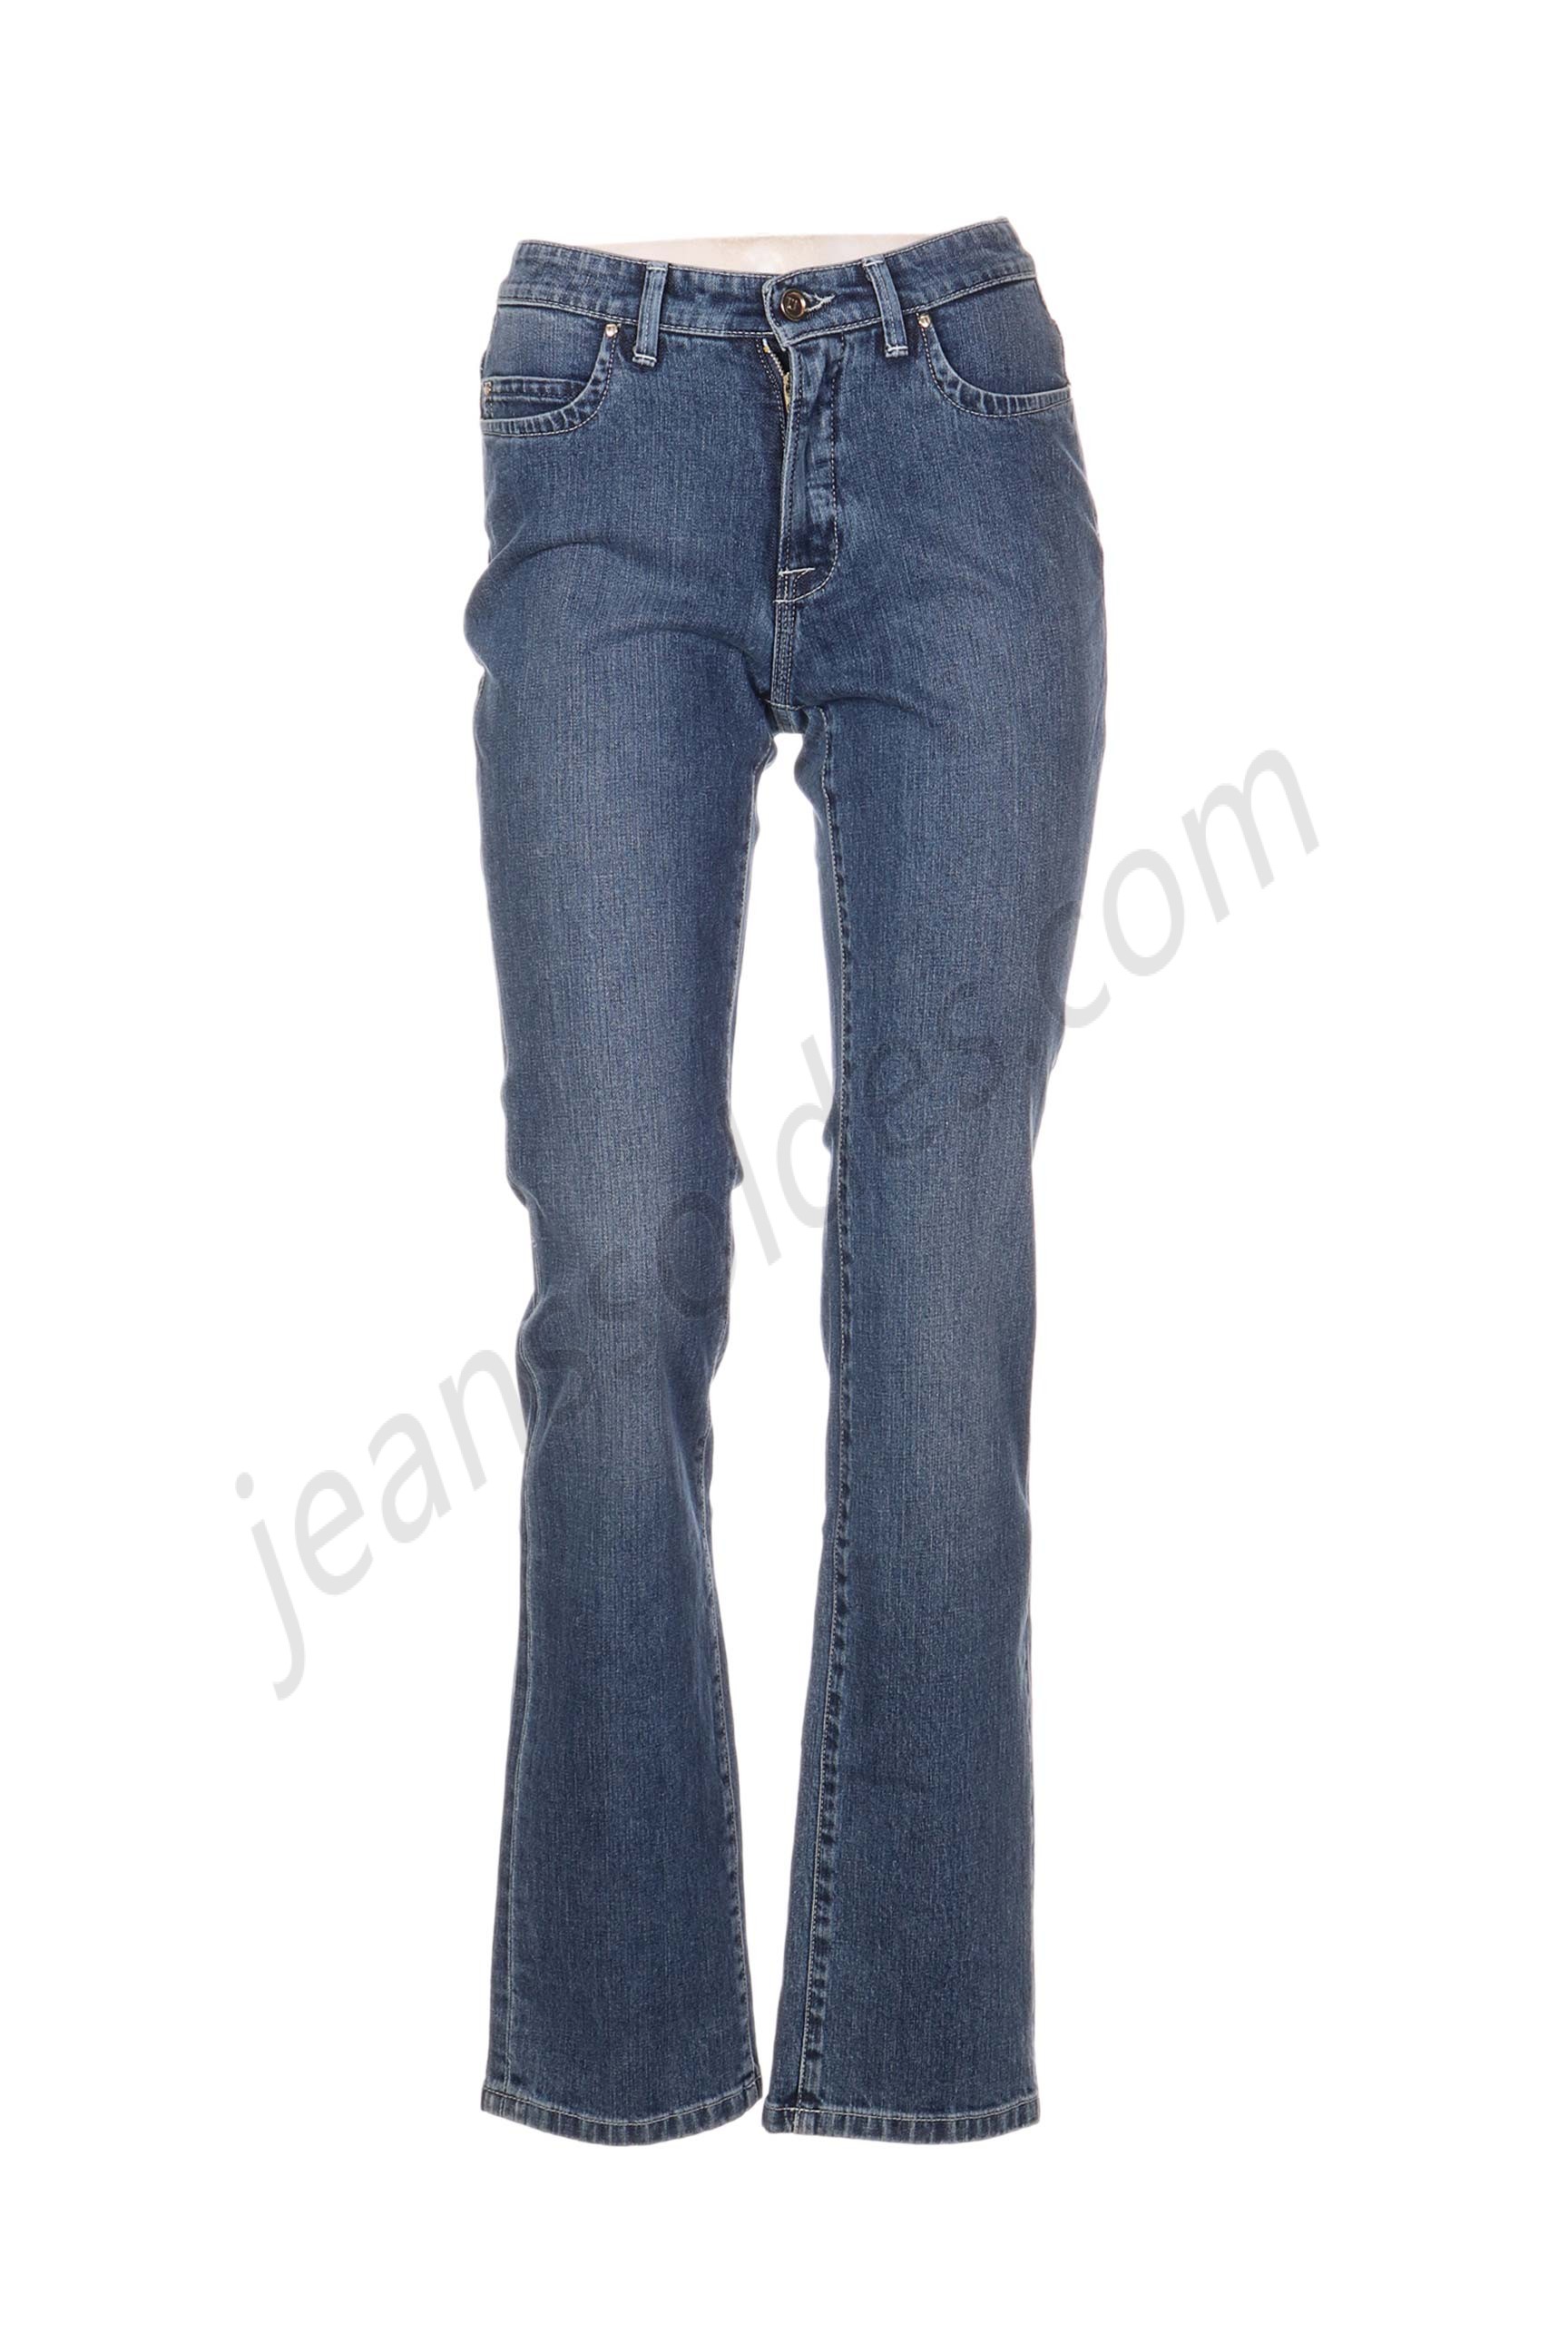 trussardi jeans-Jeans coupe droite prix d’amis - trussardi jeans-Jeans coupe droite prix d’amis